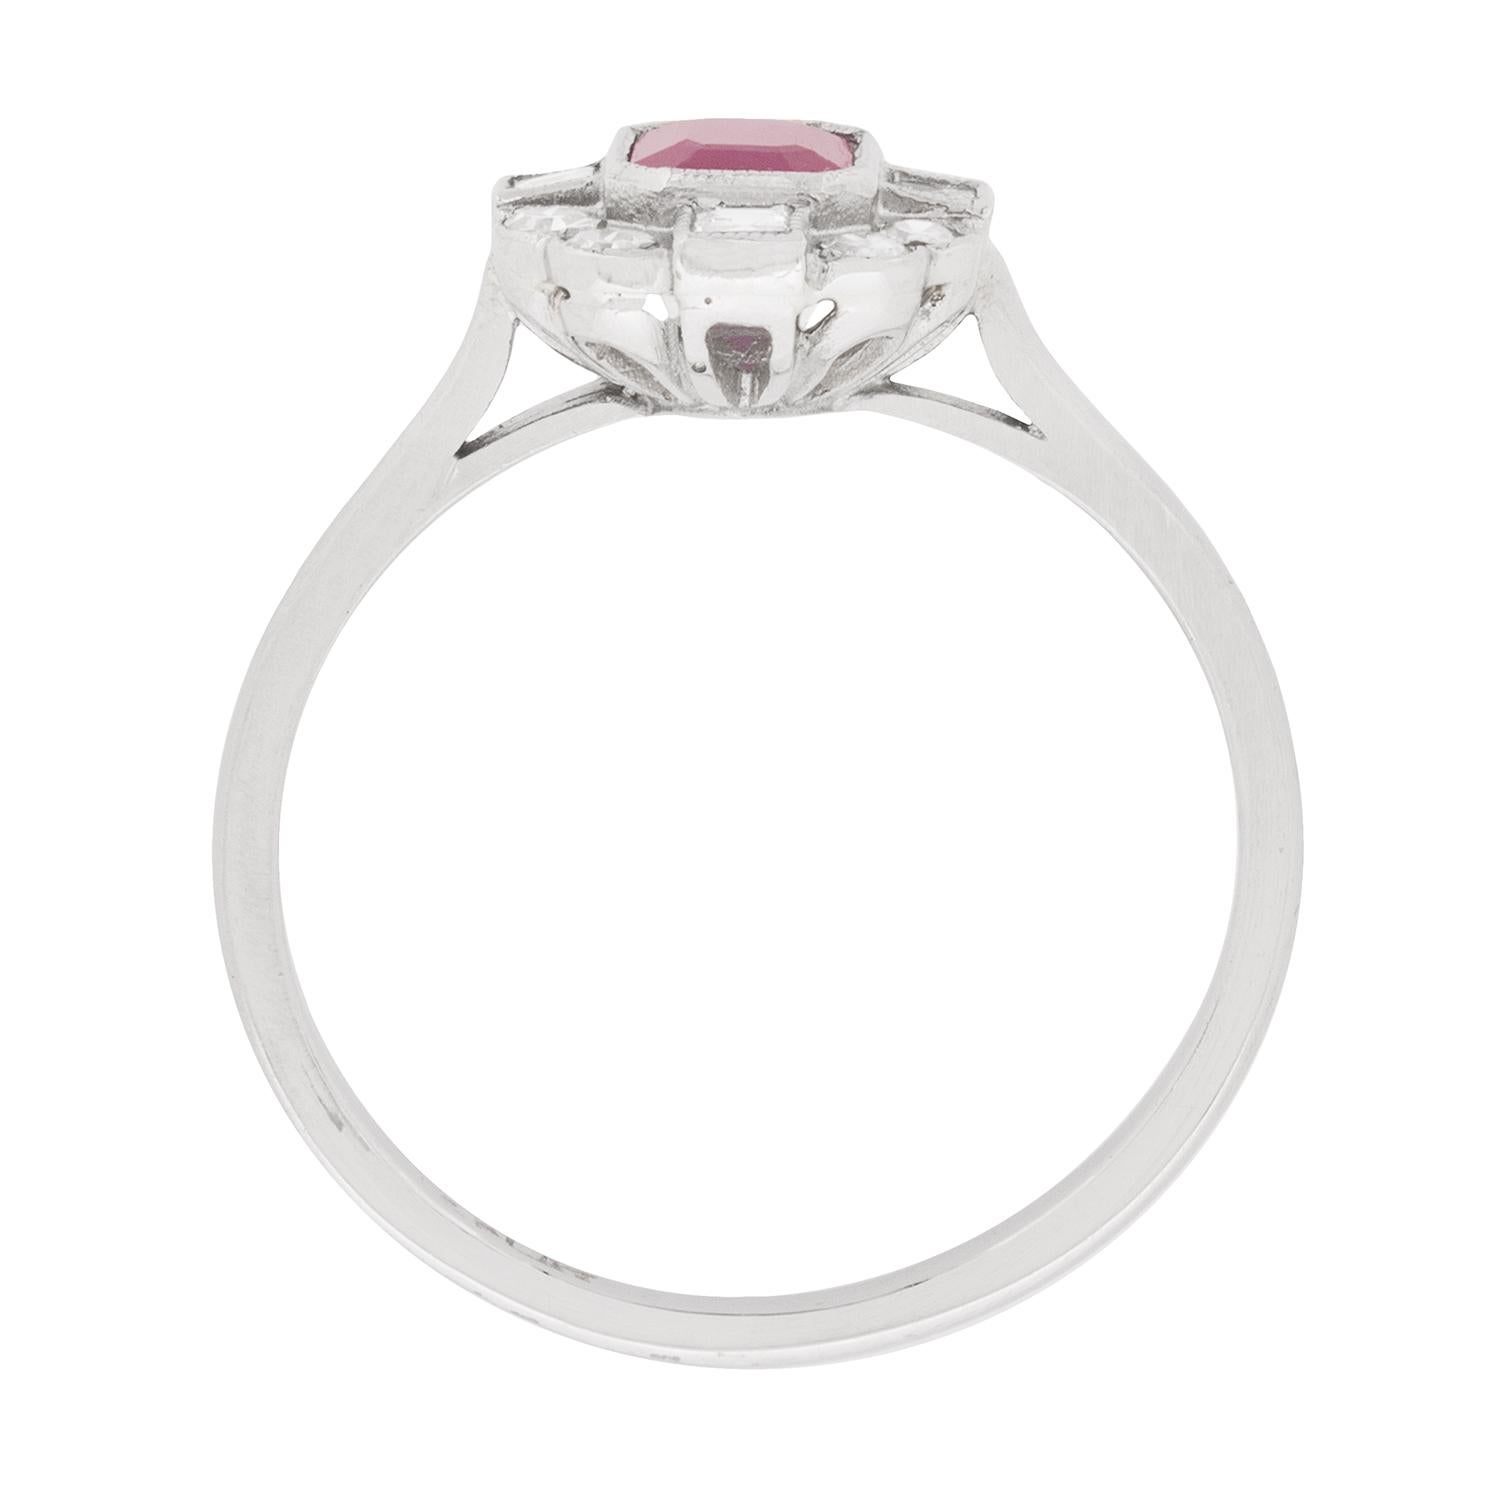 Dieser von der Deco-Ära inspirierte Ring enthält einen Rubin mit einem Gewicht von 0,65 Karat, der im Smaragdschliff geformt ist. Es handelt sich um ein helles Rot, das perfekt mit dem umliegenden Diamantencluster harmoniert. Bei den Diamanten